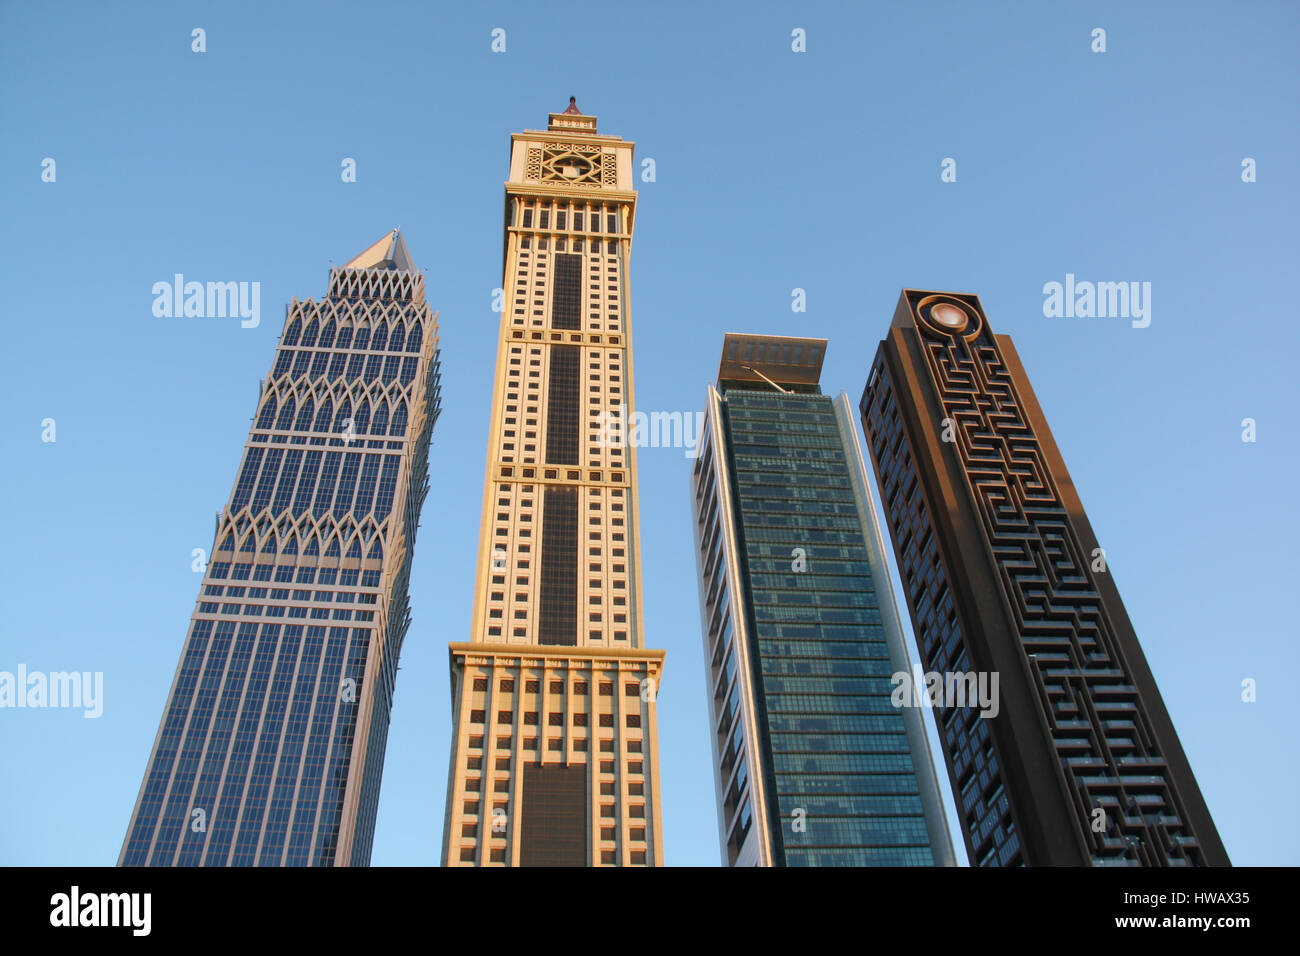 Schöne Wolkenkratzer in Dubai mit einem interessanten Architecutural Bund. Stockfoto